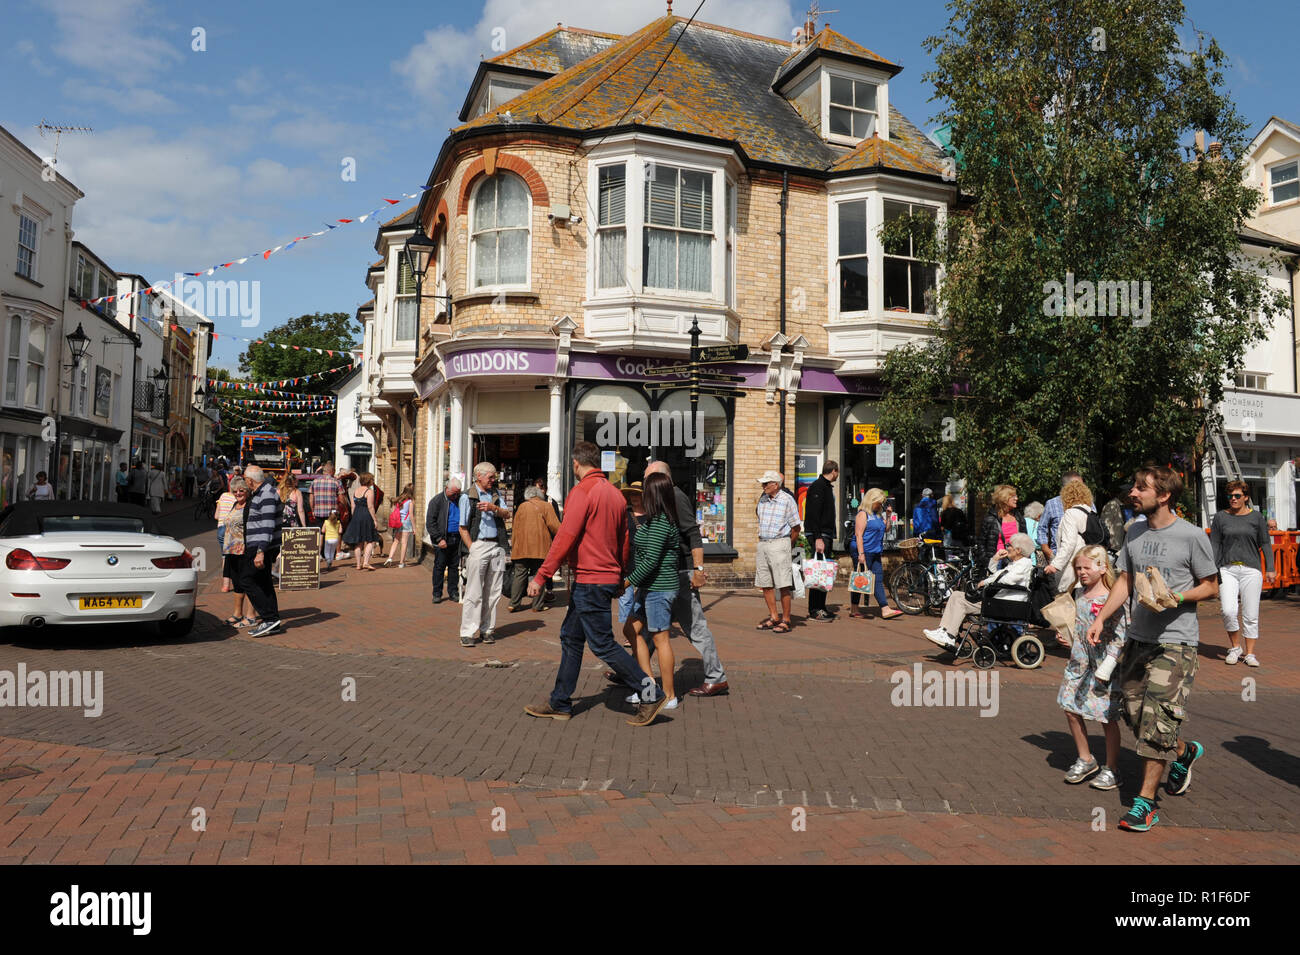 La gente caminando por el centro de la ciudad de Sidmouth Foto de stock